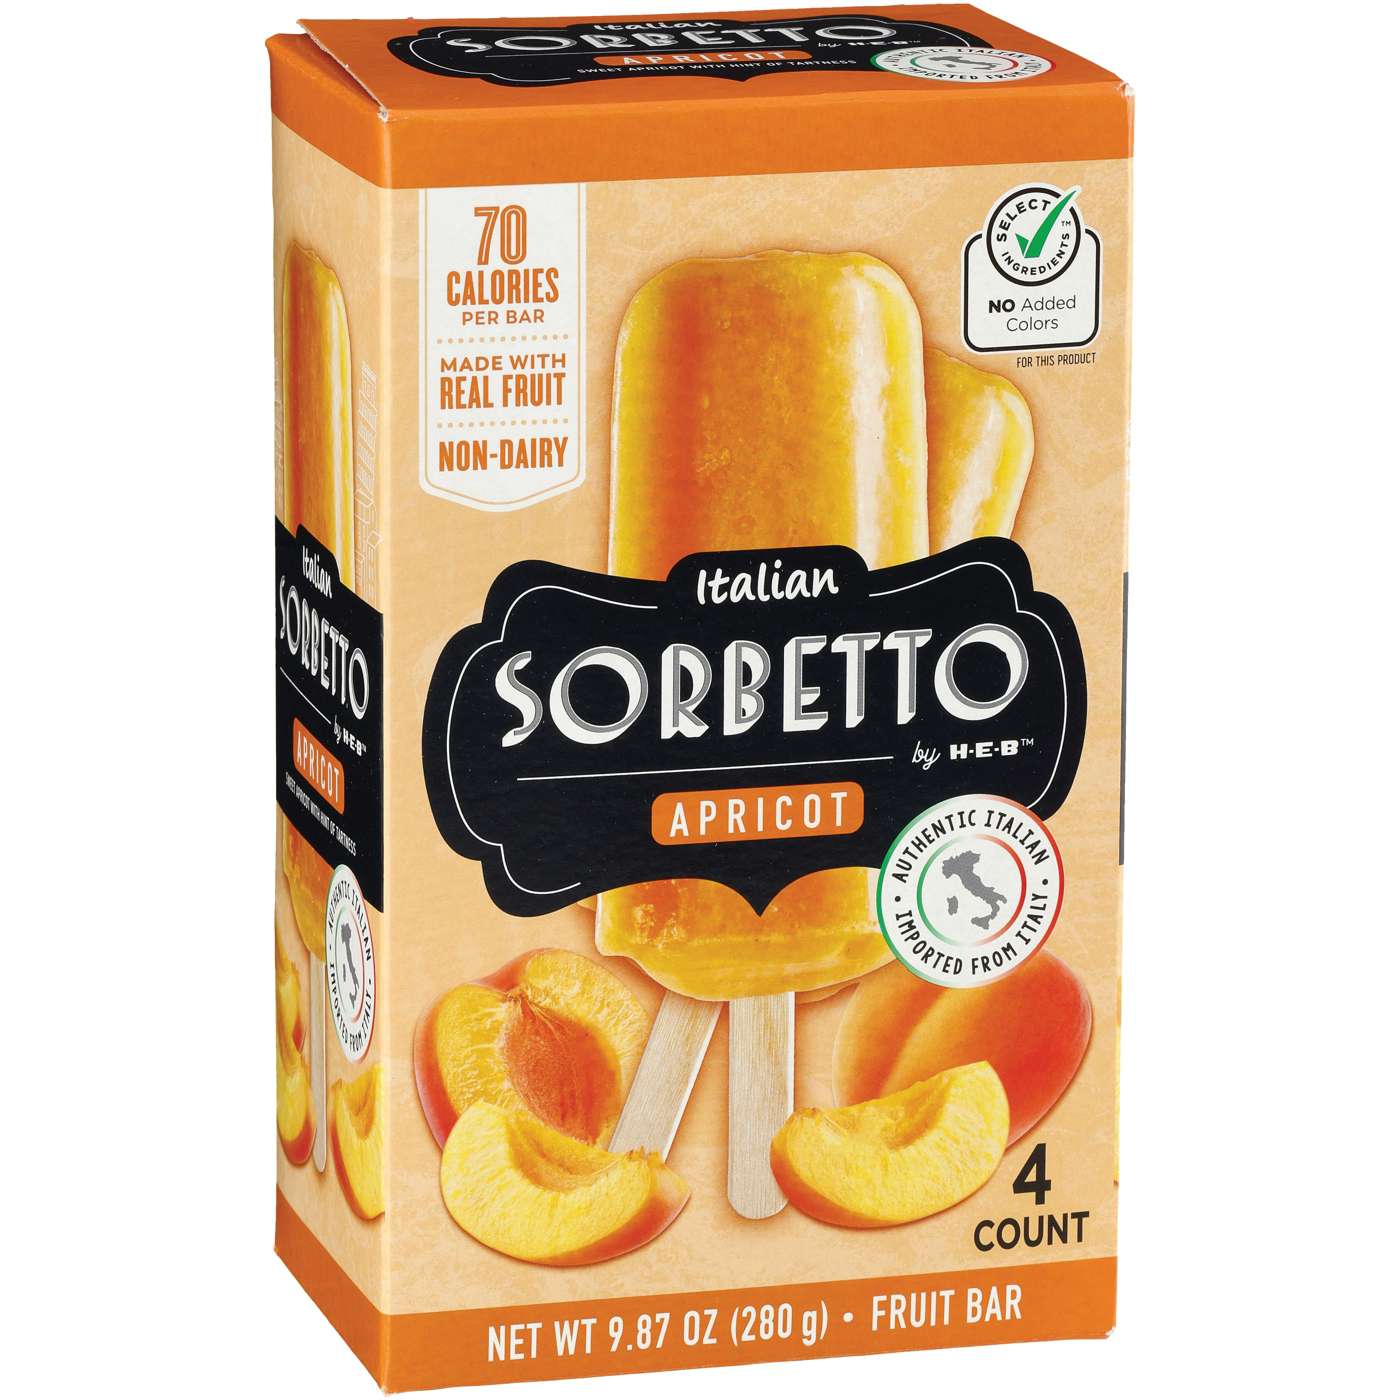 Italian Sorbetto by H-E-B Non-Dairy Frozen Dessert Bars - Apricot; image 2 of 2